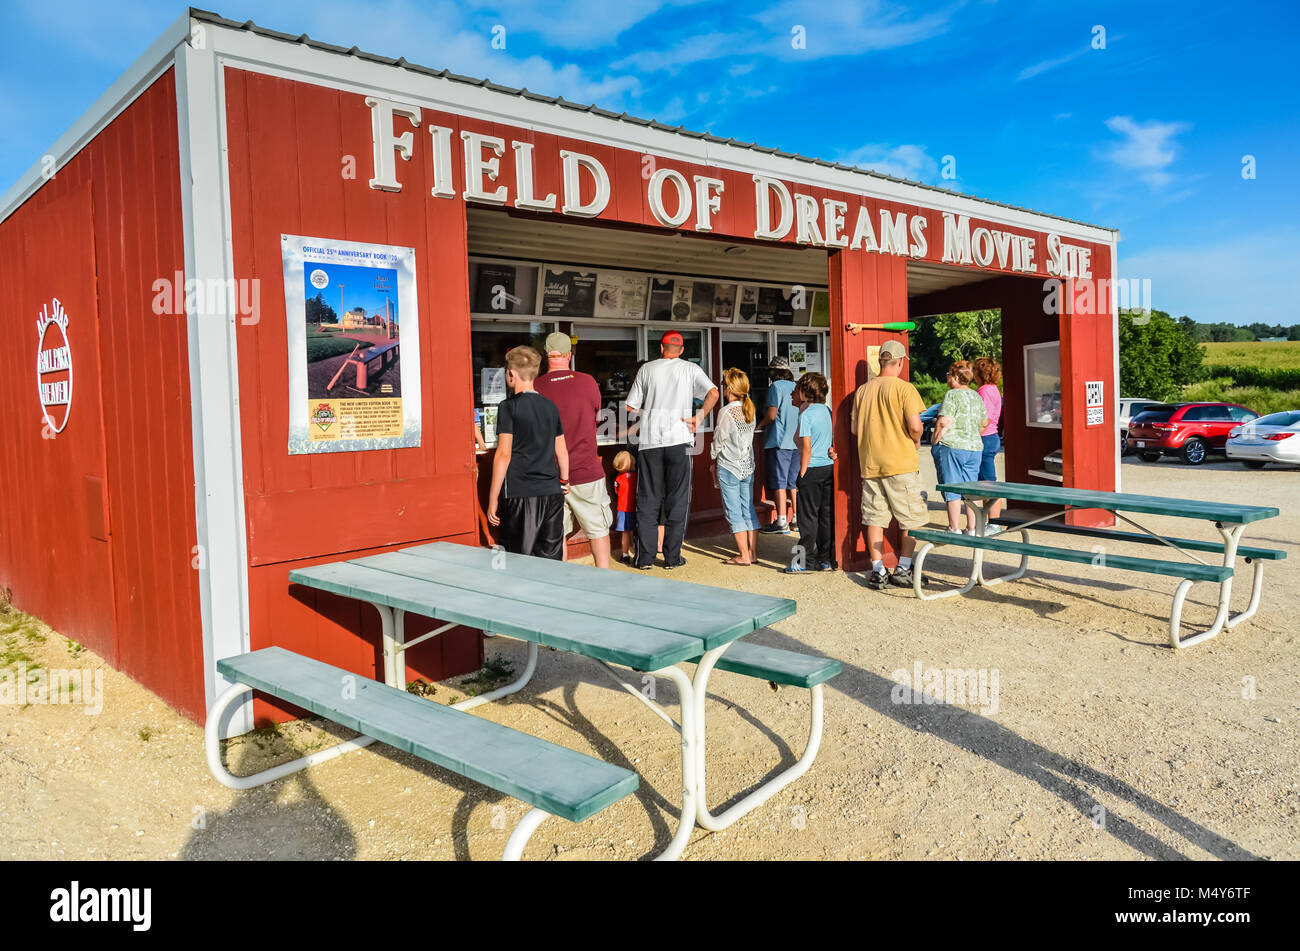 Il campo dei sogni è un campo di baseball e la cultura pop attrazione turistica costruita originariamente per il film con lo stesso nome. È nella contea di Dubuque, ho Foto Stock